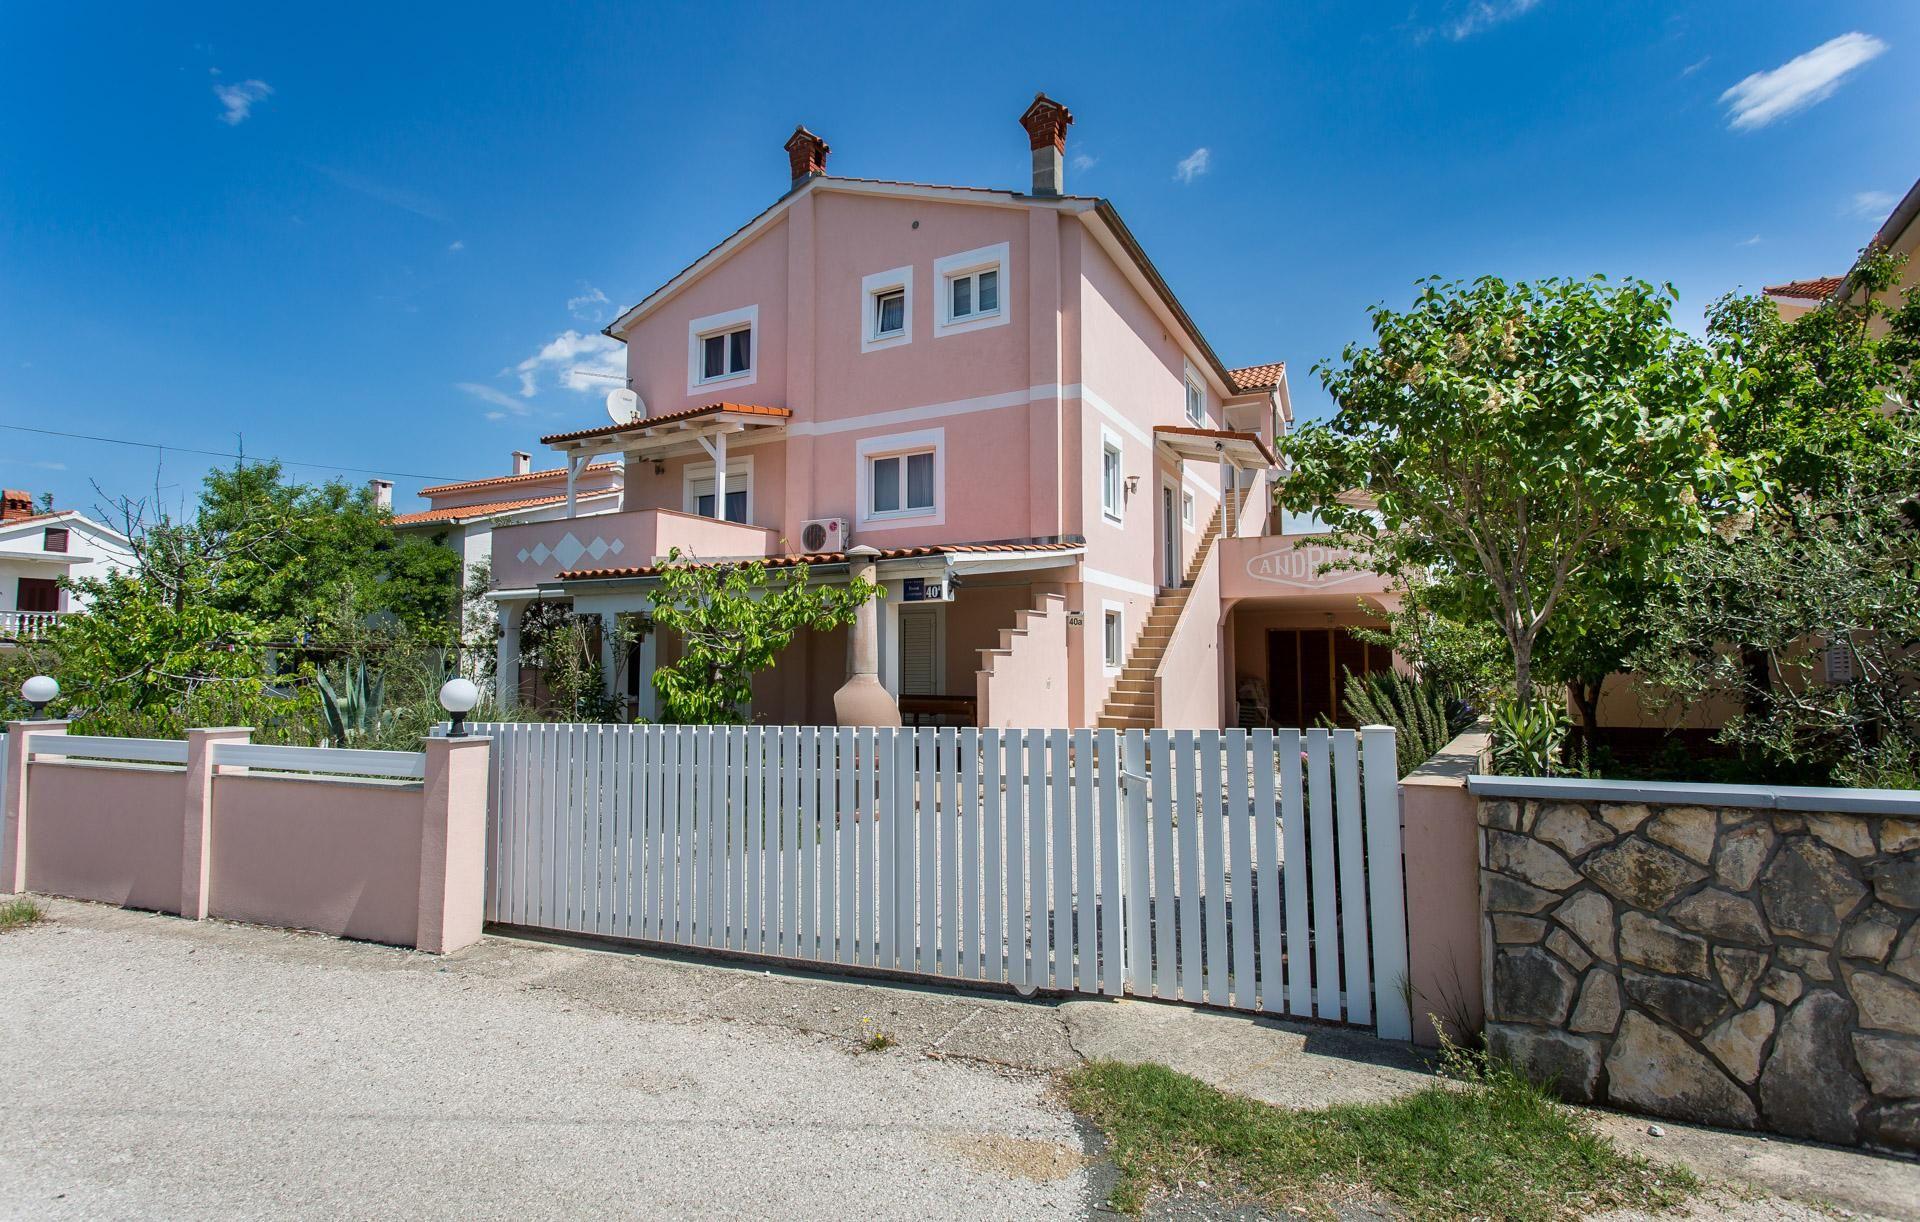 Ferienwohnung für 5 Personen ca. 100 m²  Ferienhaus  kroatische Inseln